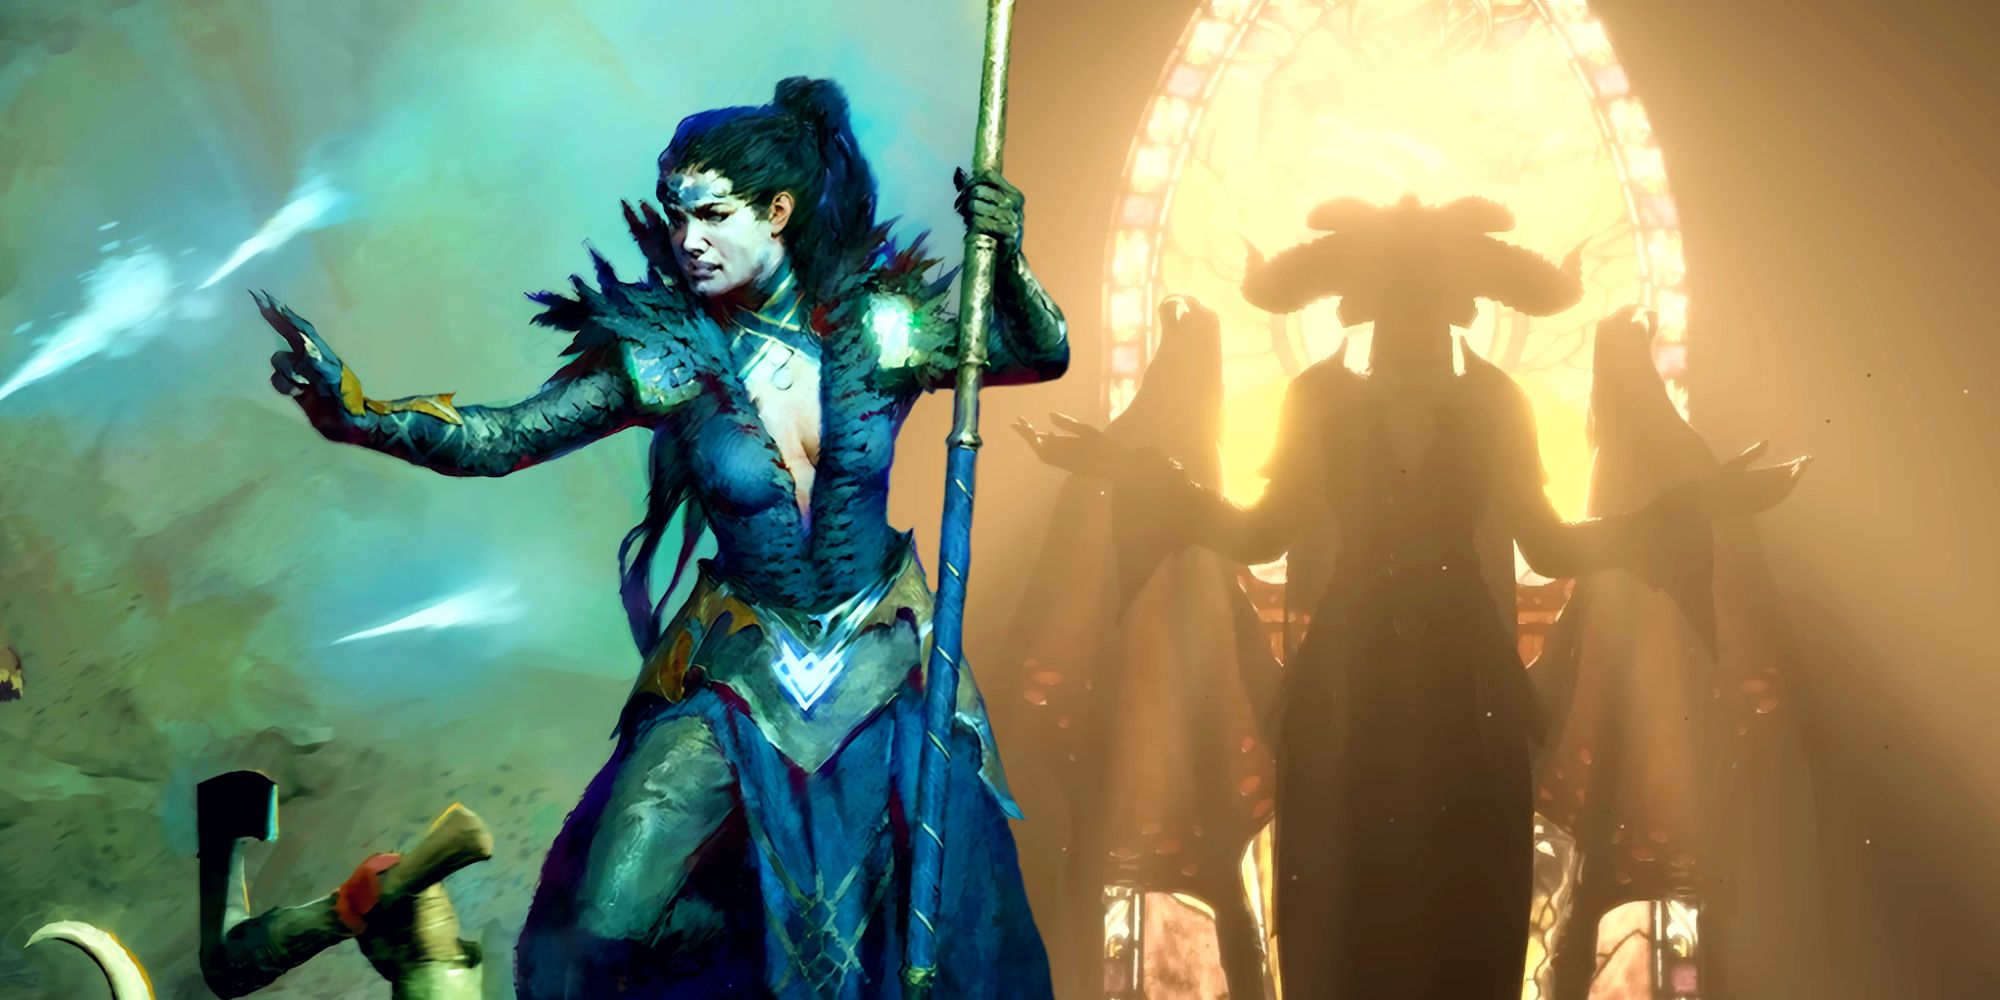 Seorang Penyihir Diablo 4 meluncurkan pecahan es ke monster di luar bingkai, diedit di sebelah siluet Lilith di depan jendela kaca patri.